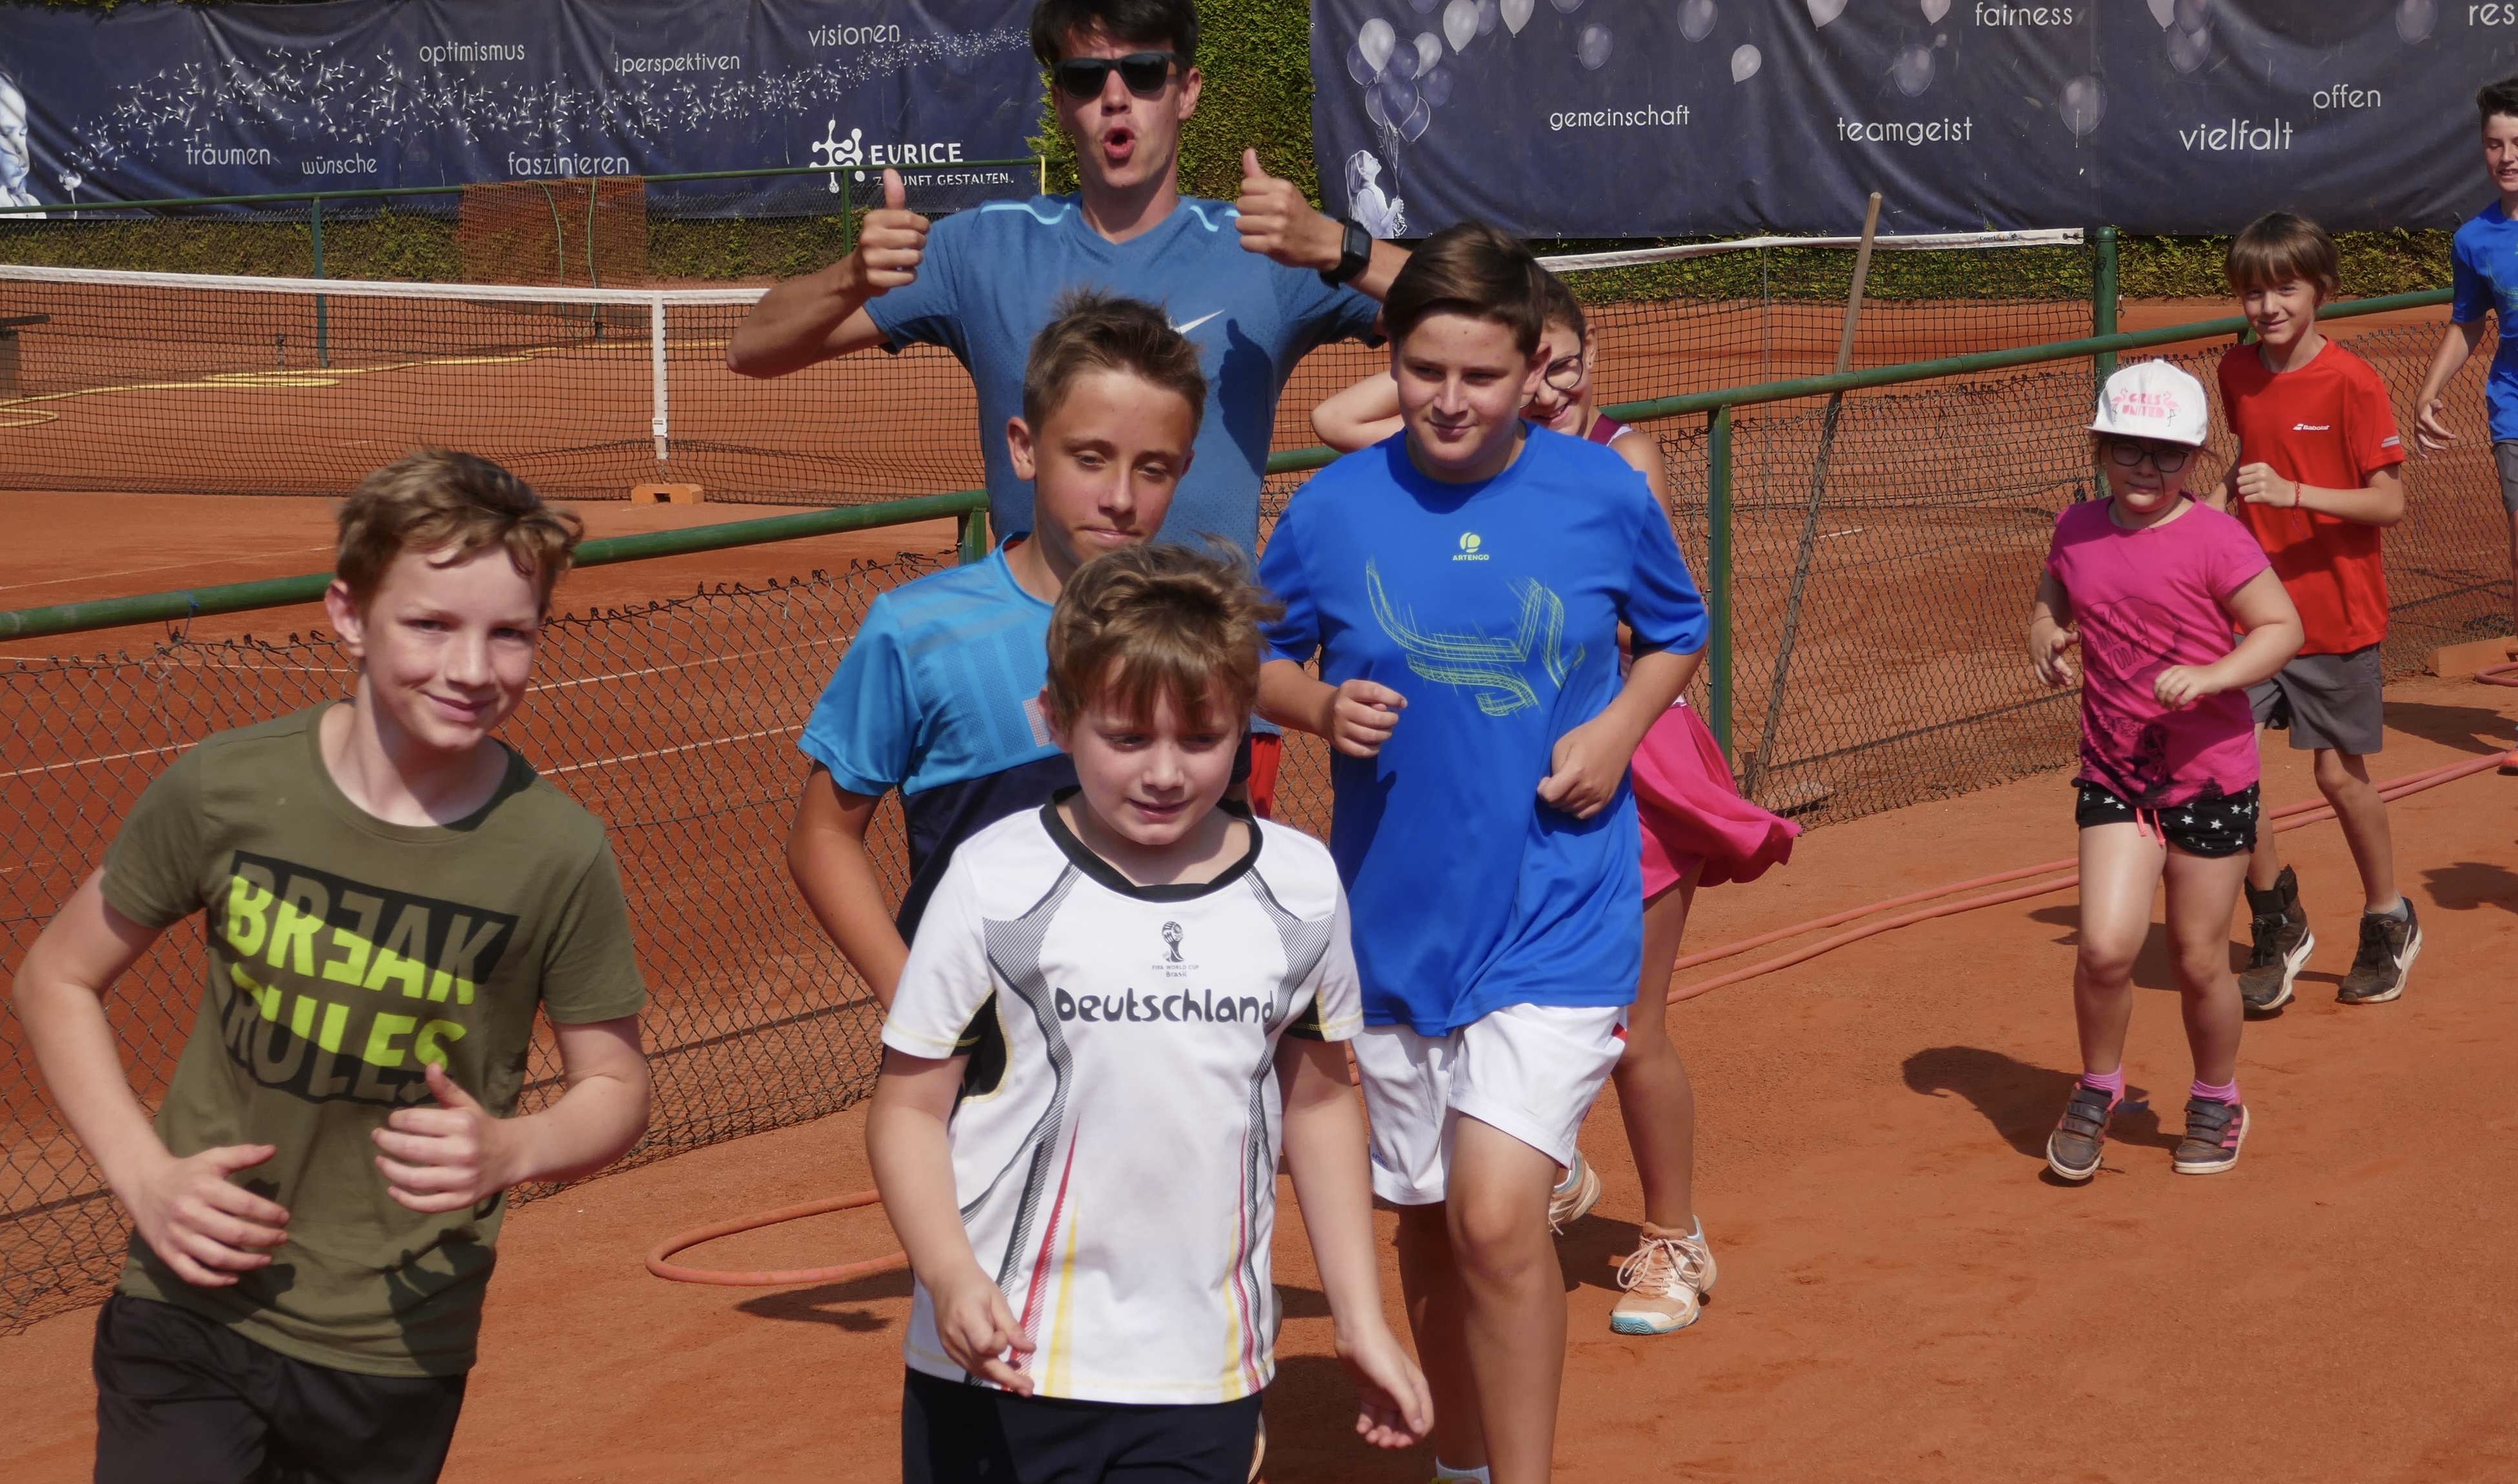 Bild vom Tenniscamp 2020. Zu sehen sind Kinder die sich gemeinsam mit dem Trainer warmlaufen.